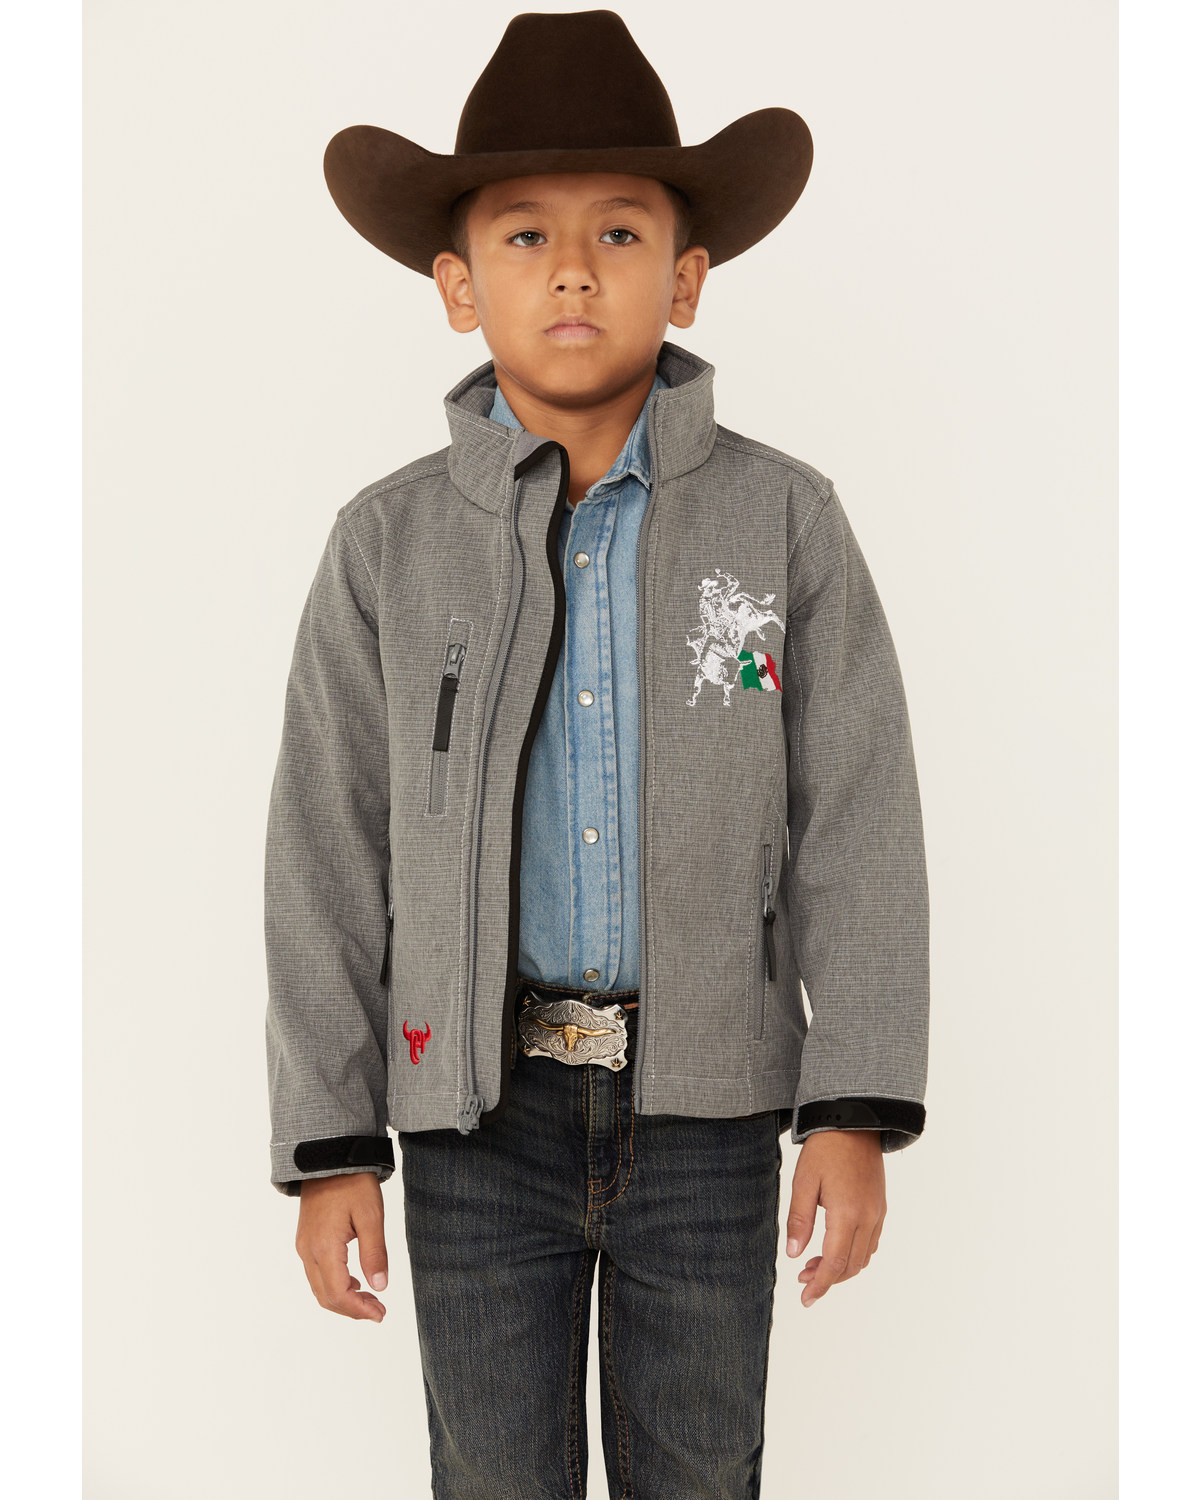 Cowboy Hardware Boys' Fuerte Bull Zip Jacket